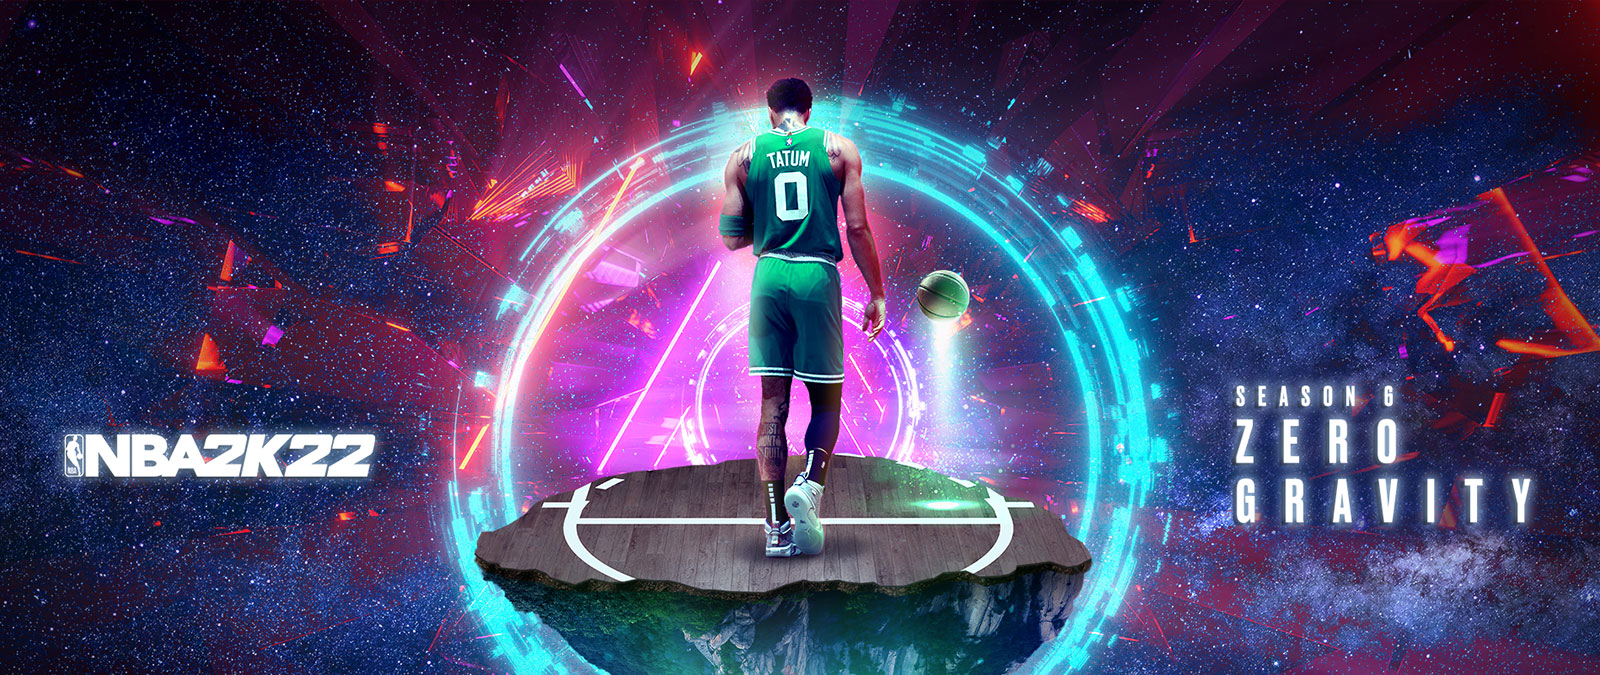 NBA 2K22, 6. évad: Zero Gravity, Tatum egy kosárlabdapálya lebegő darabján áll, körülötte energiagyűrűk.